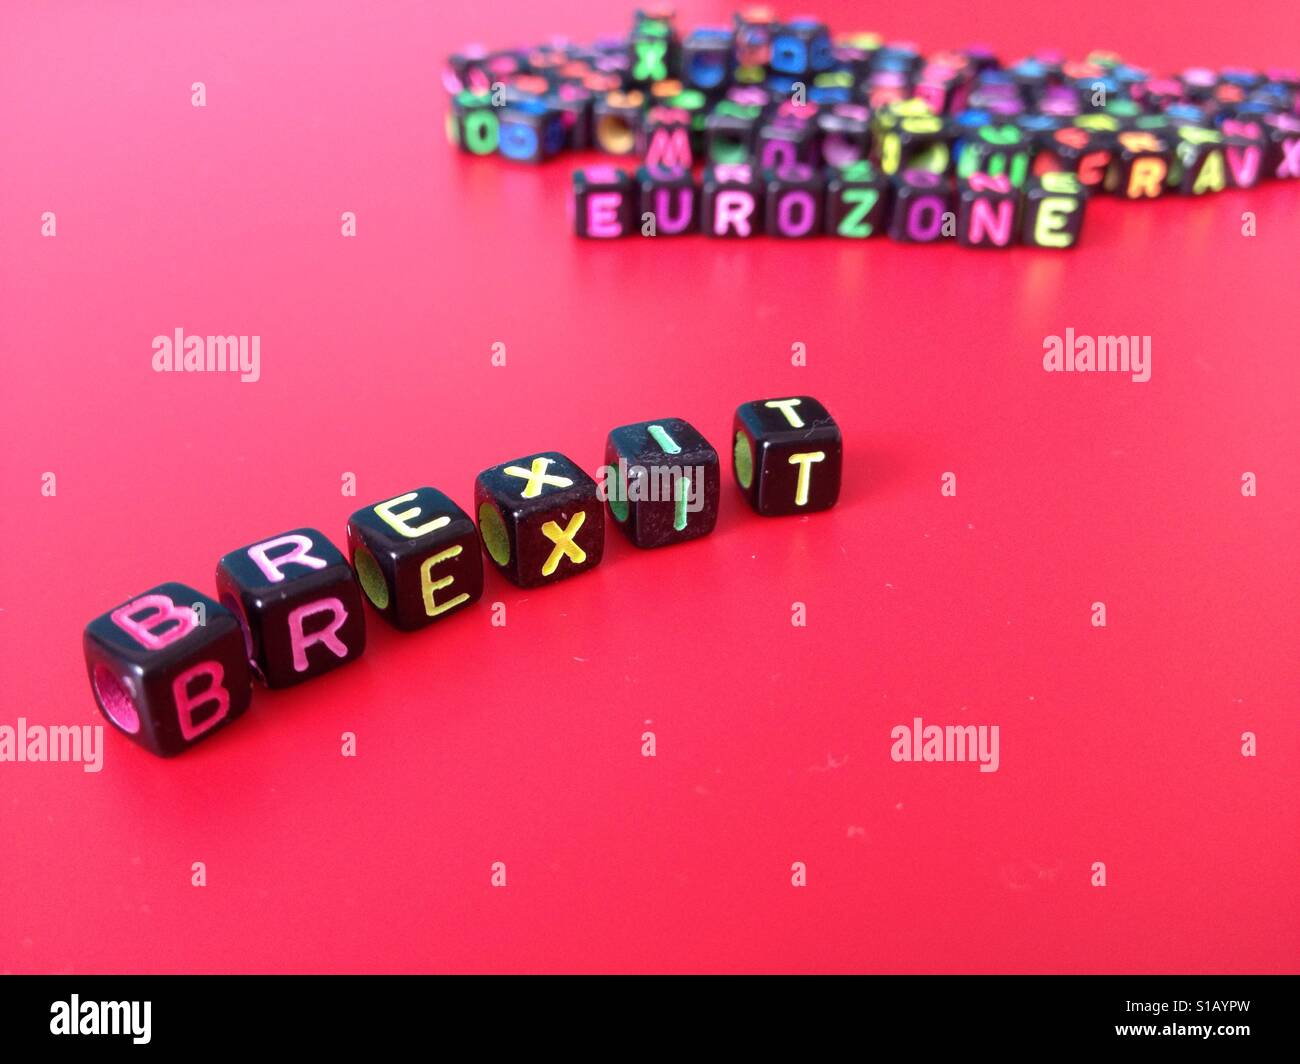 La palabra brexit con en el fondo la palabra eurozona Foto de stock